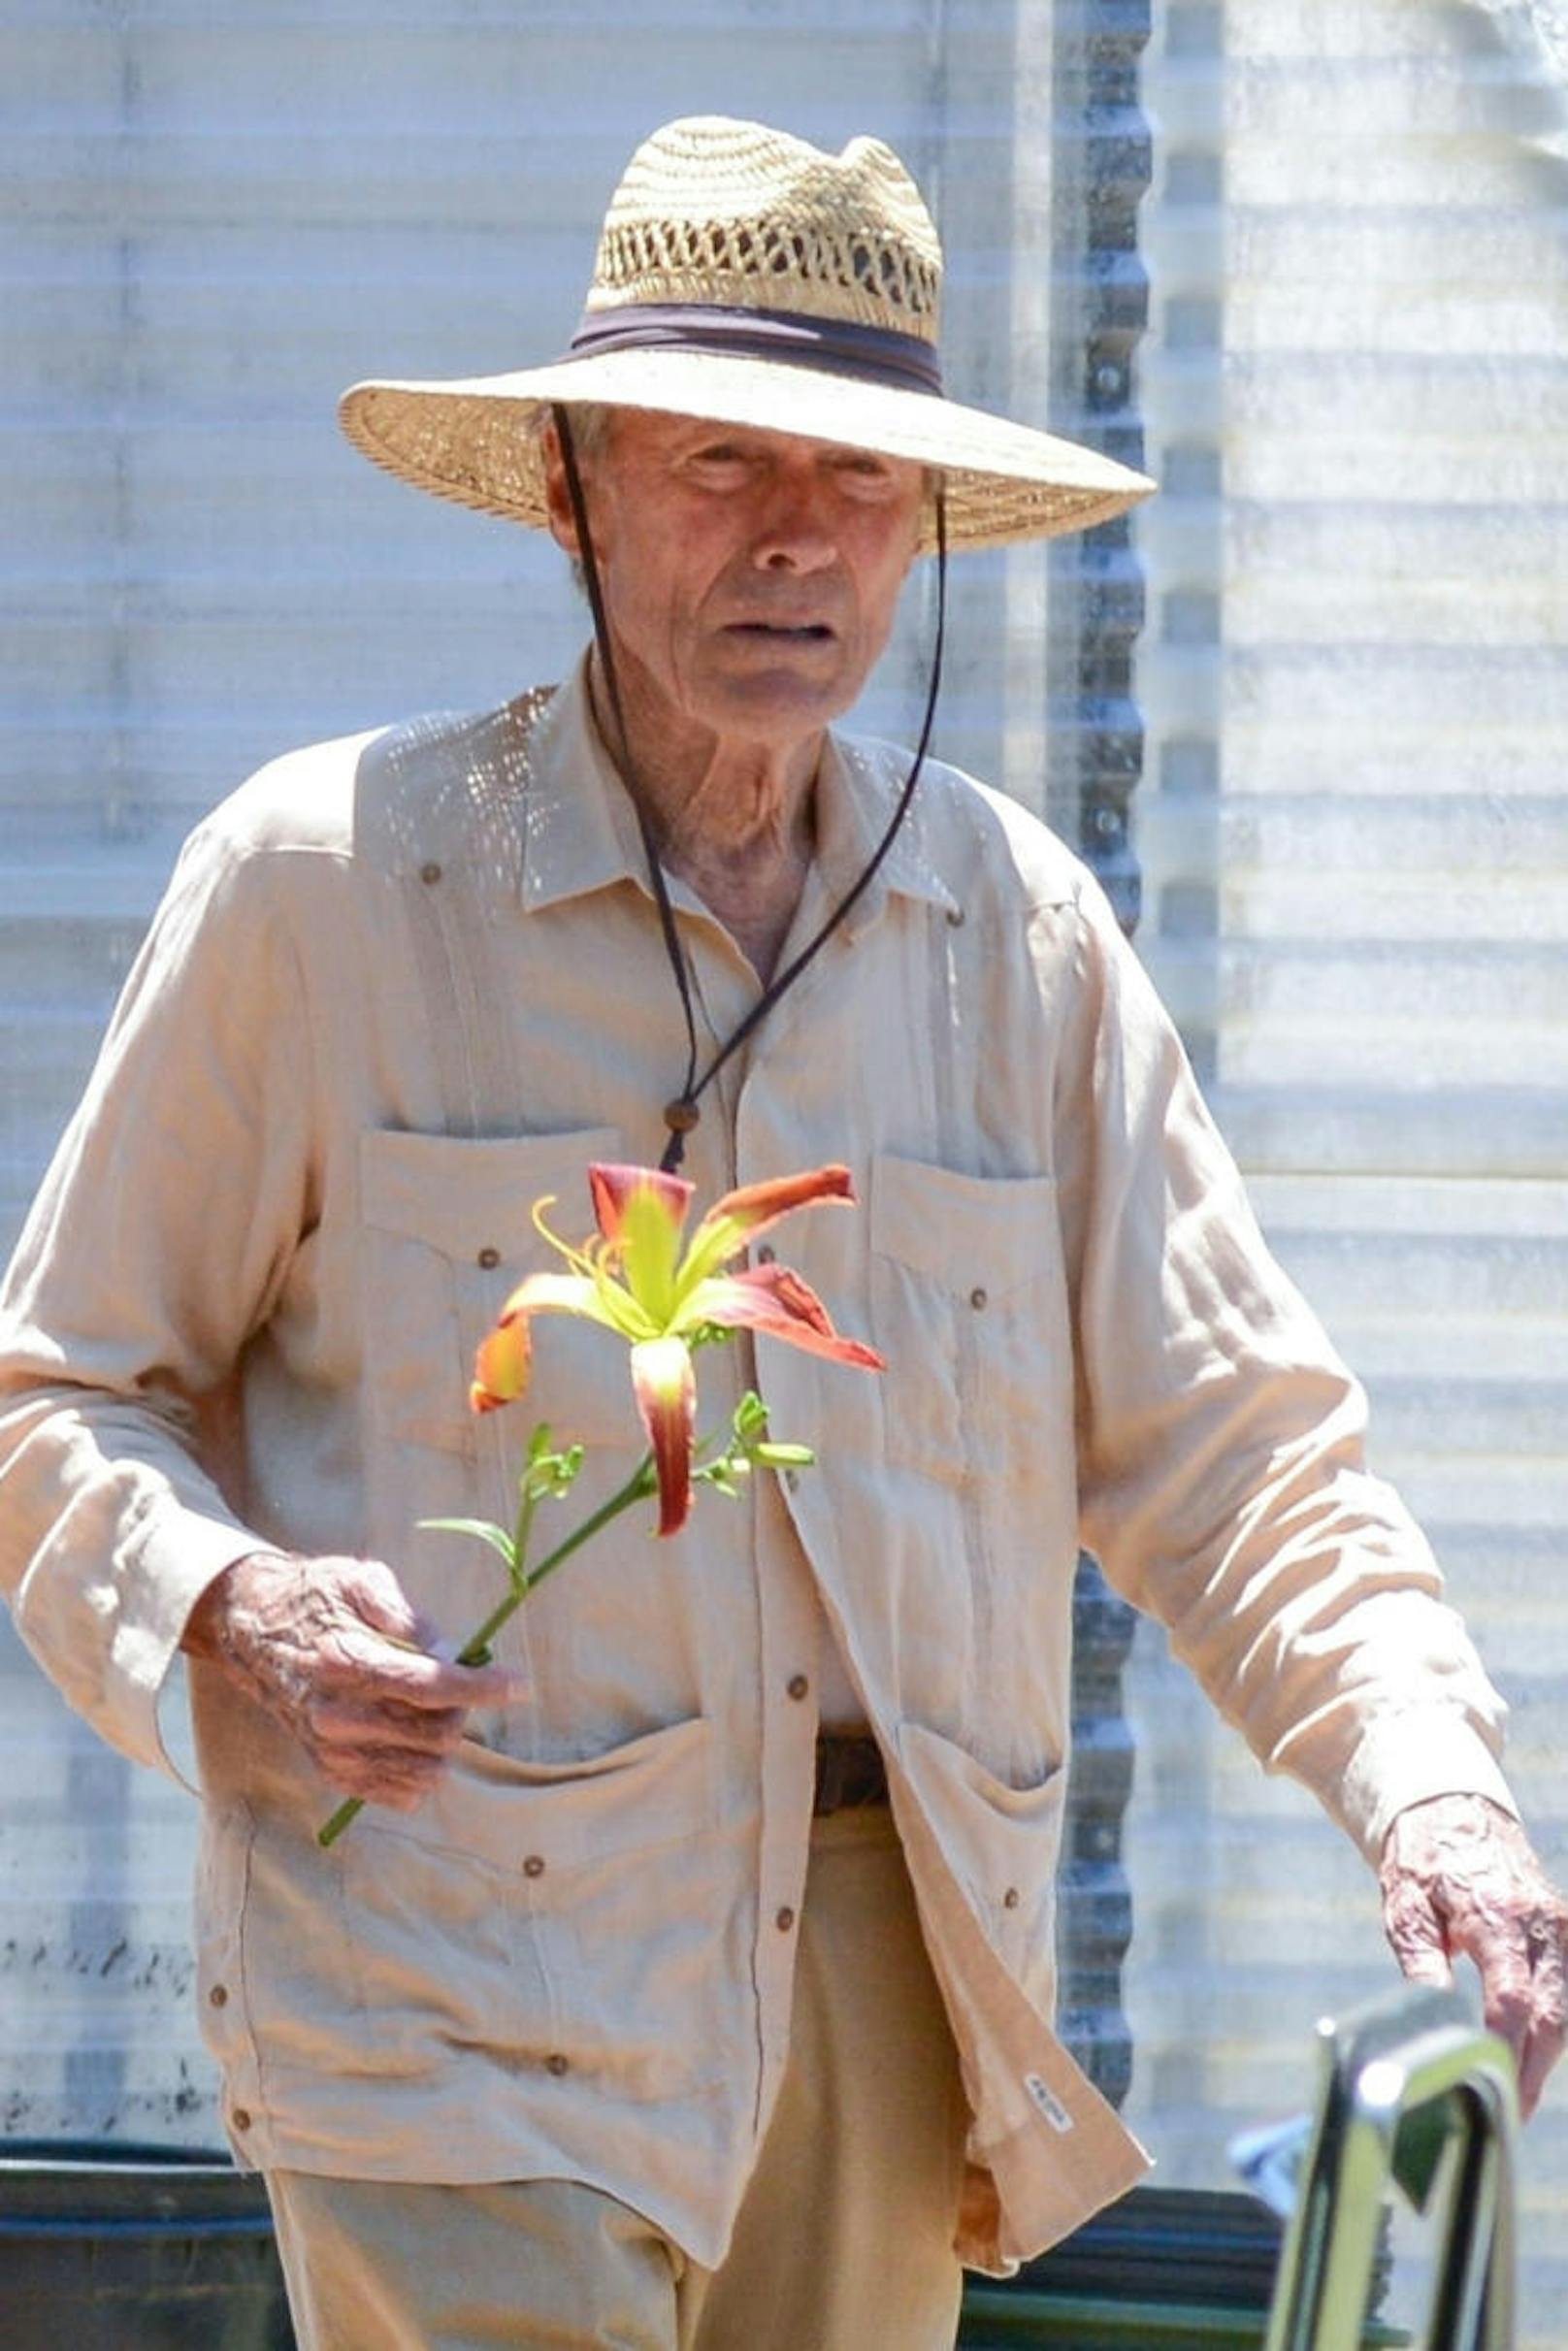 07.06.2018: Dritter Frühling für Clint Eastwood. Nach "Gran Torino" (2008) wollte er nur noch Regie führen, "Back in the Game" brachte ihn zurück ins Spiel, jetzt hat der 88-Jährige erneut eine Hauptrolle: In "The Mule" wird er zum Drogenkurier mit grünem Daumen.